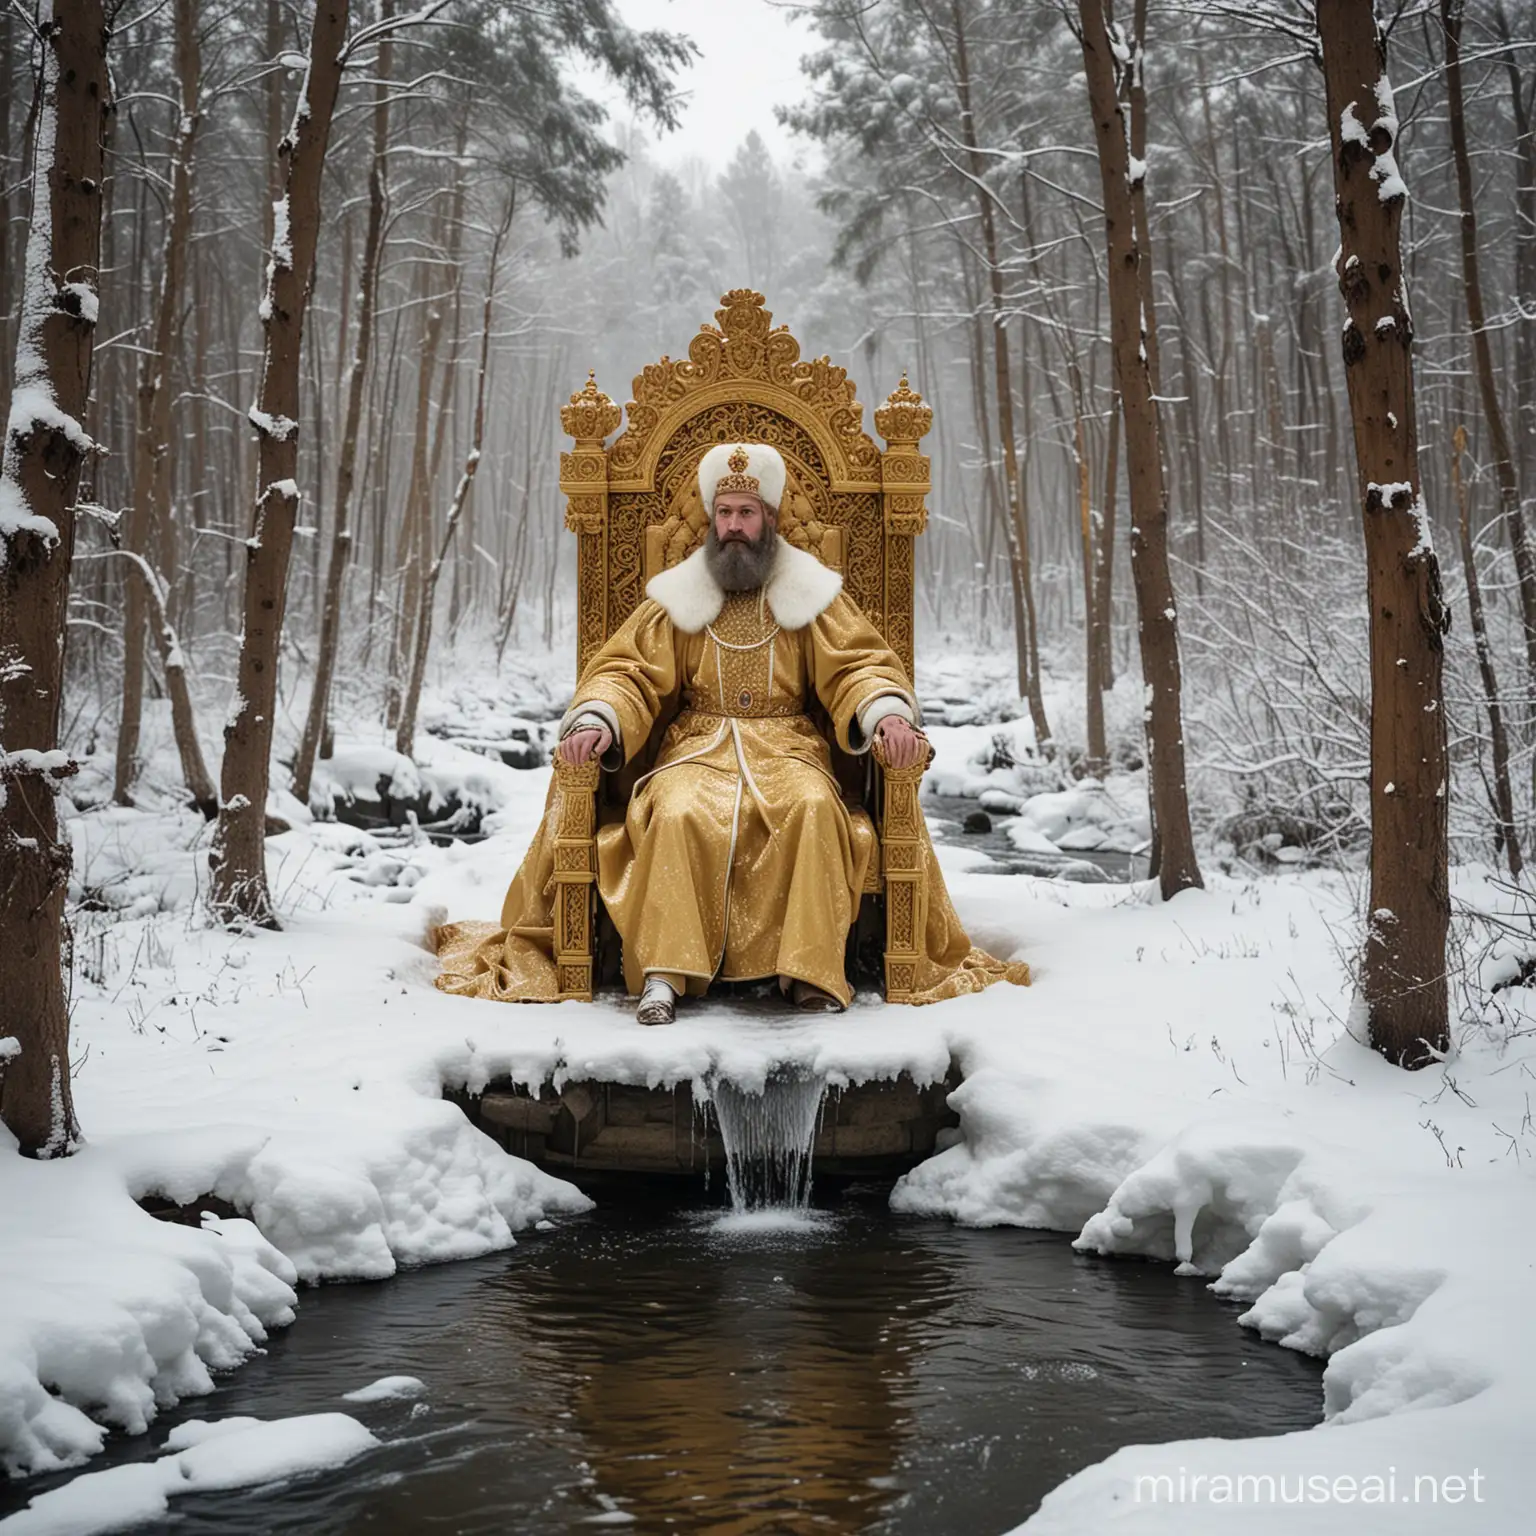 Zar de Rusia sentado en su trono dorado en un claro del bosque nevado, detras de arroyo con pescados saltando fuera del agua